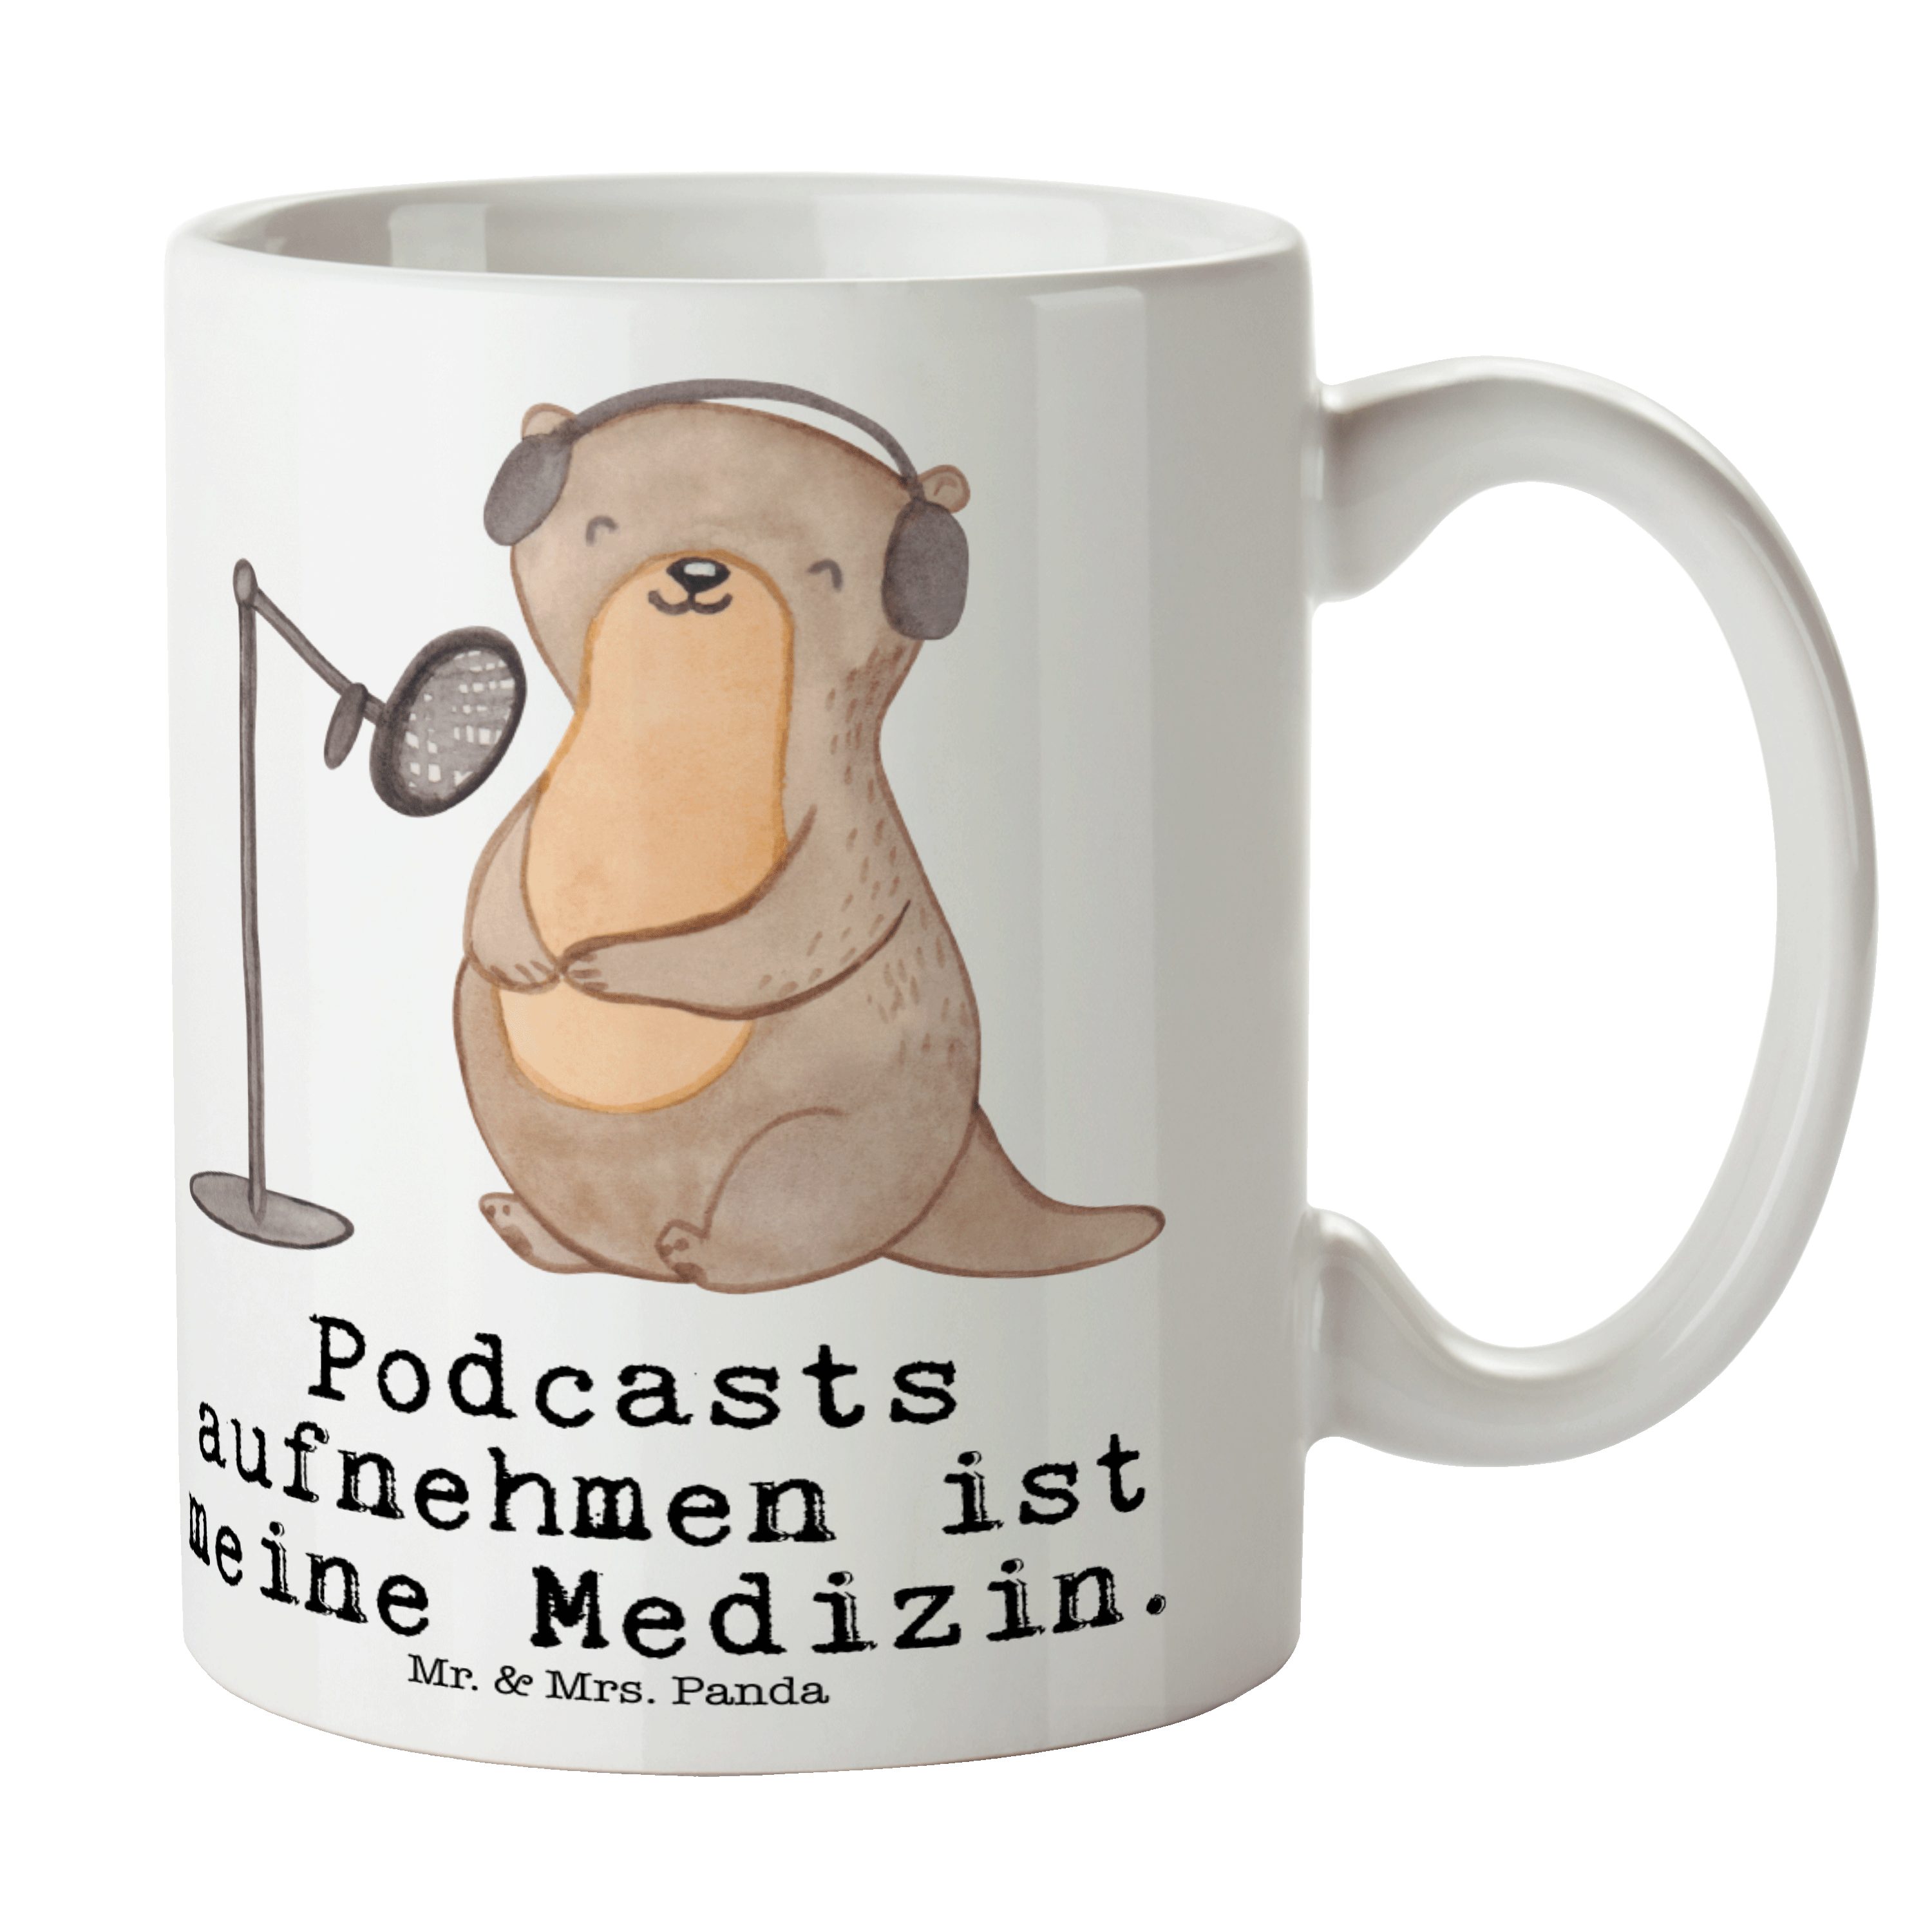 Mr. & Mrs. Panda Tasse Otter Podcast aufnehmen Medizin - Weiß - Geschenk, Tasse, Podcaster, Keramik